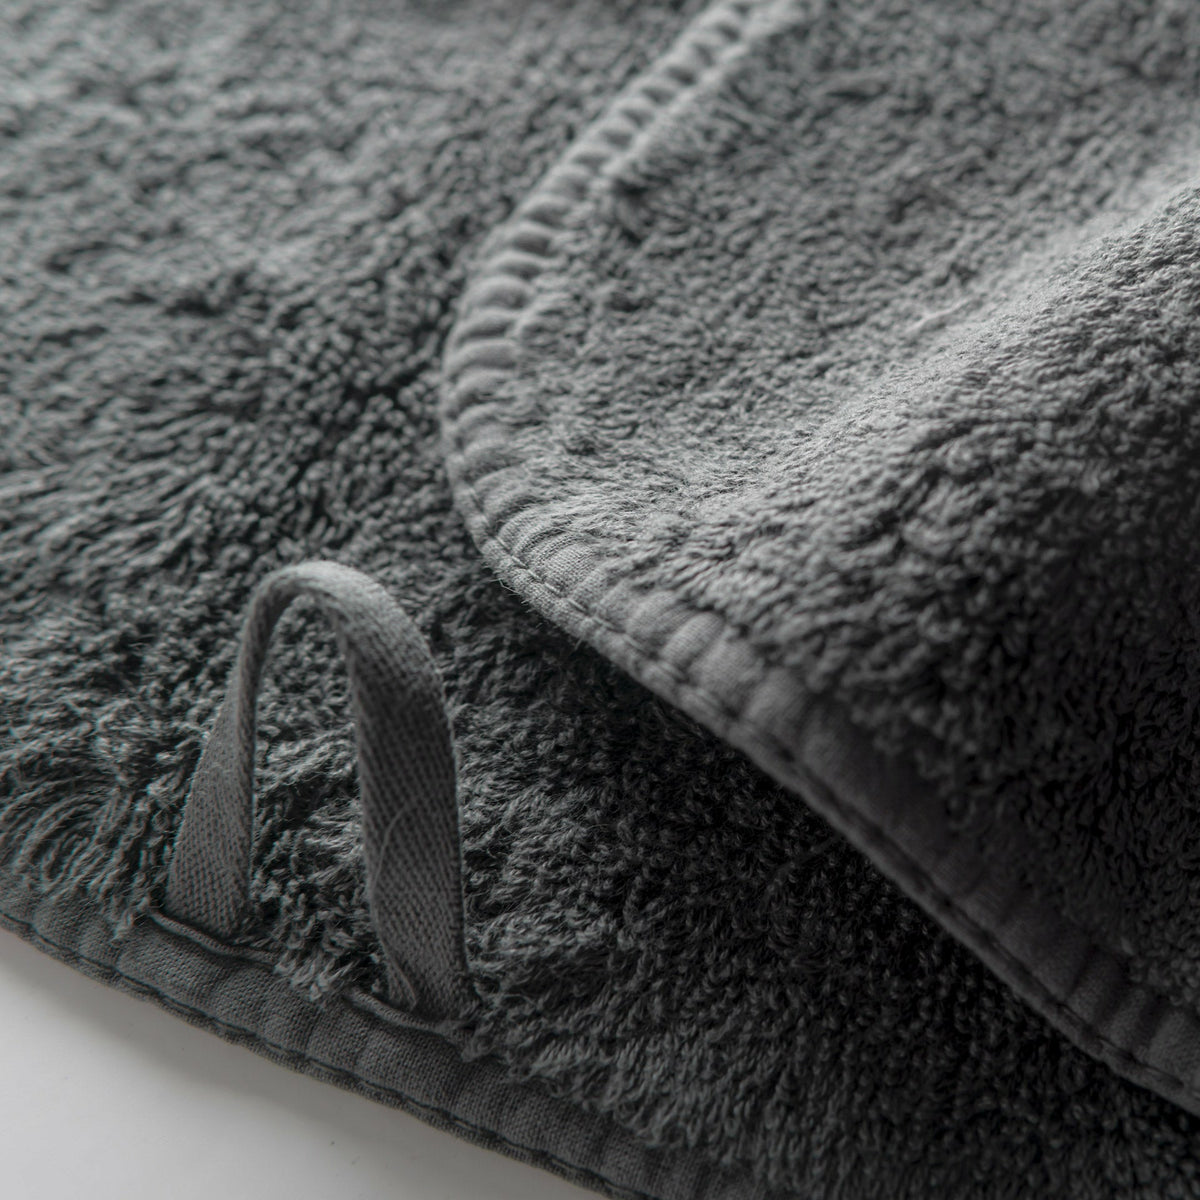 Graccioza Long Double Loop Bath Towels Close Up Storm Fine Linens